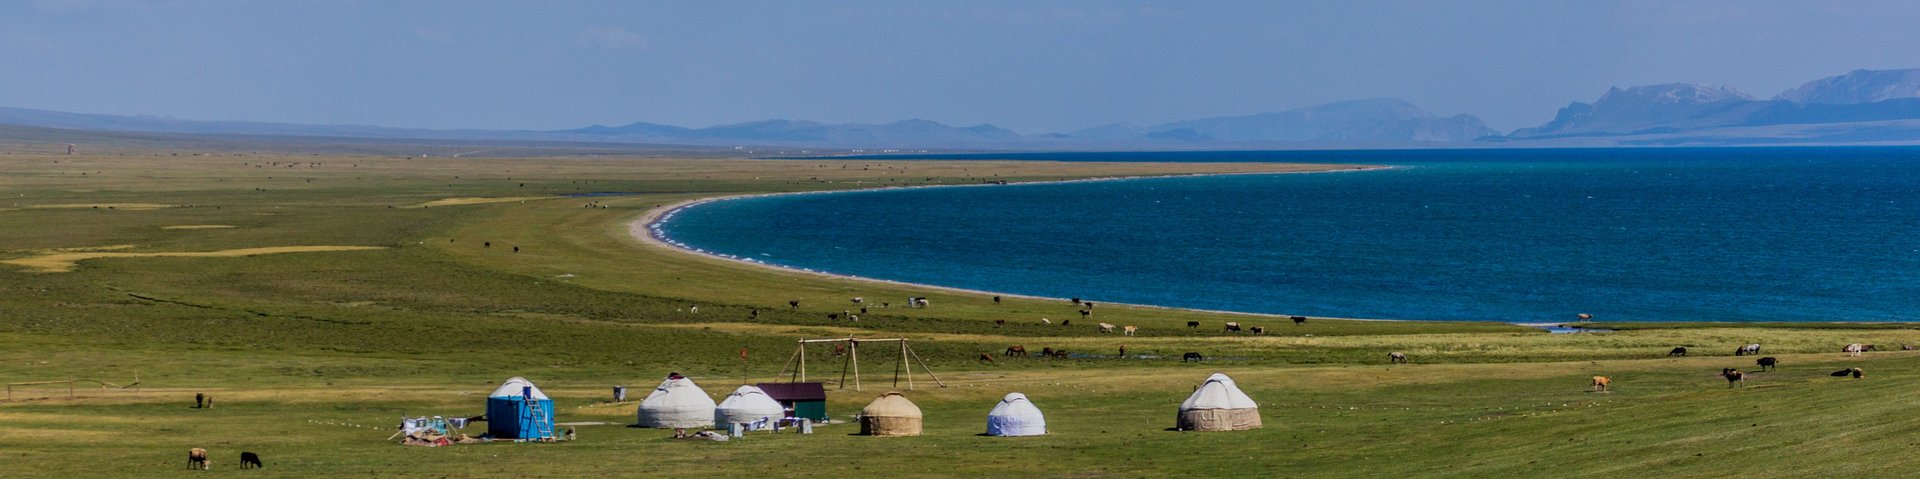 Jurtensiedlung am See Son Köl in Kirgistan an einem schönen Sommertag